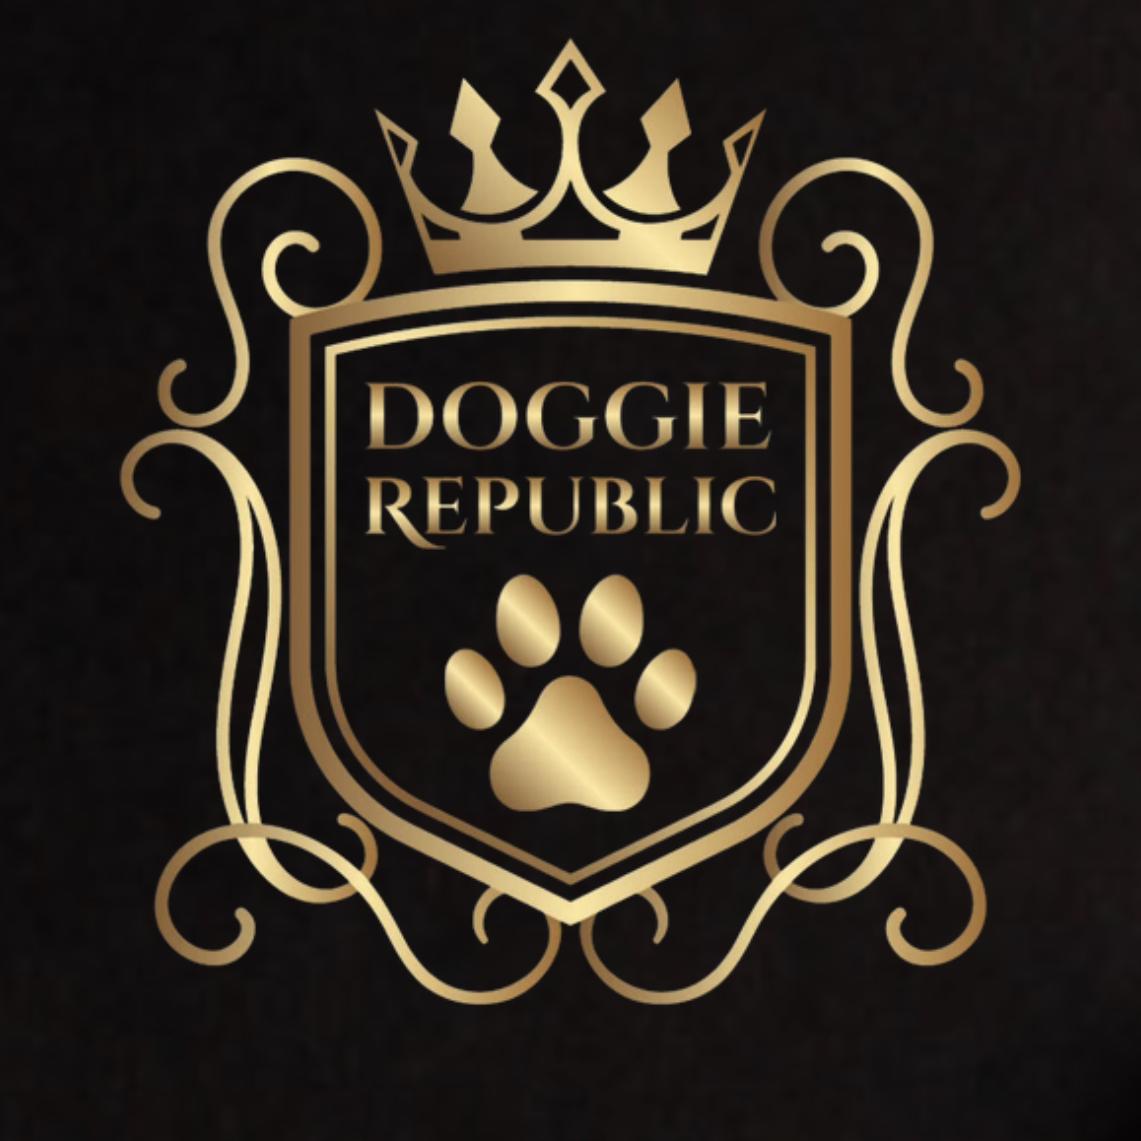 Doggie Republic's images